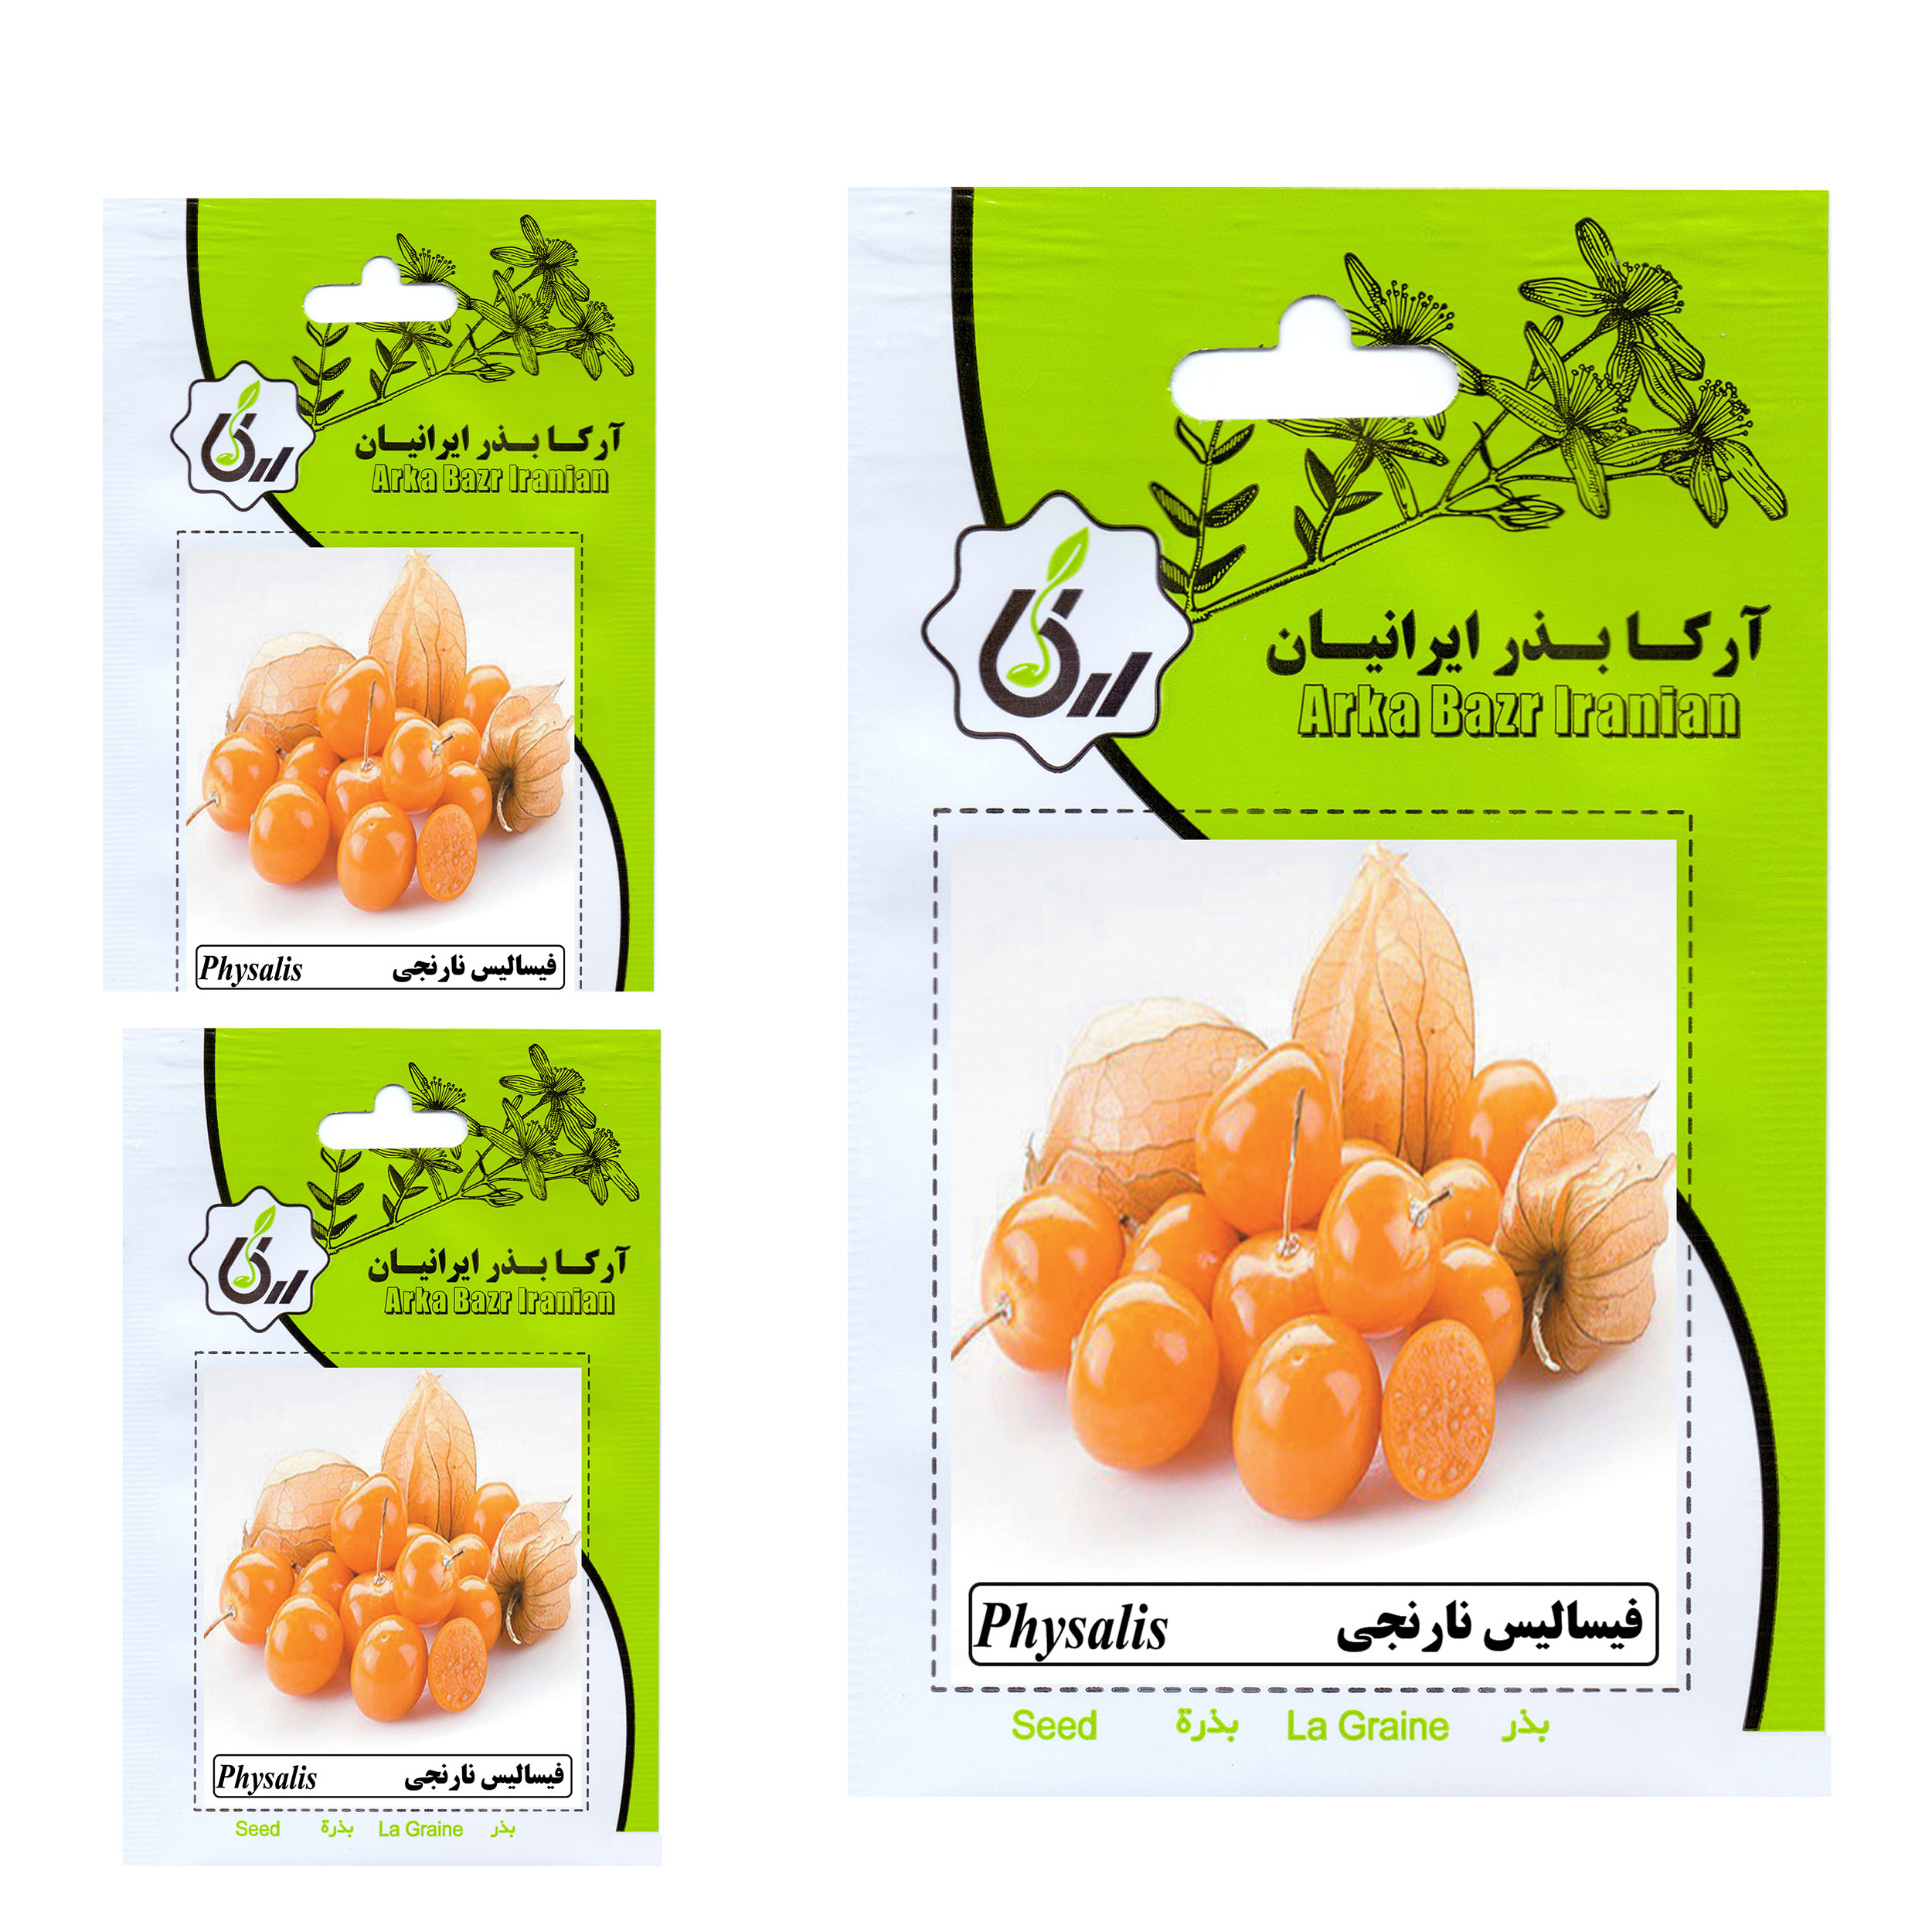 بذر فیسالیس نارنجی آرکا بذر ایرانیان کد 015 مجموعه 3 عددی